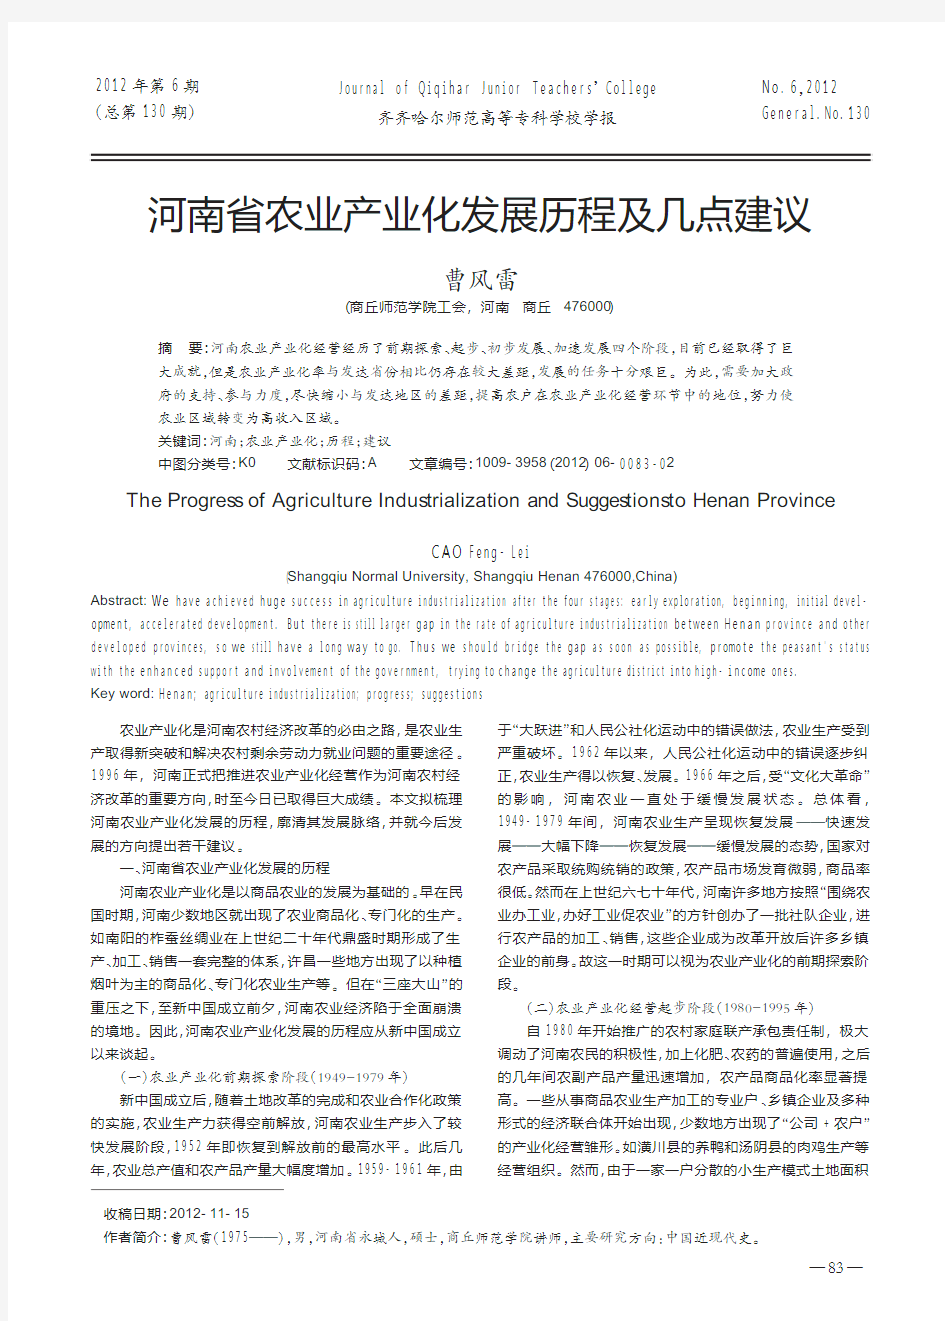 河南省农业产业化发展历程及几点建议